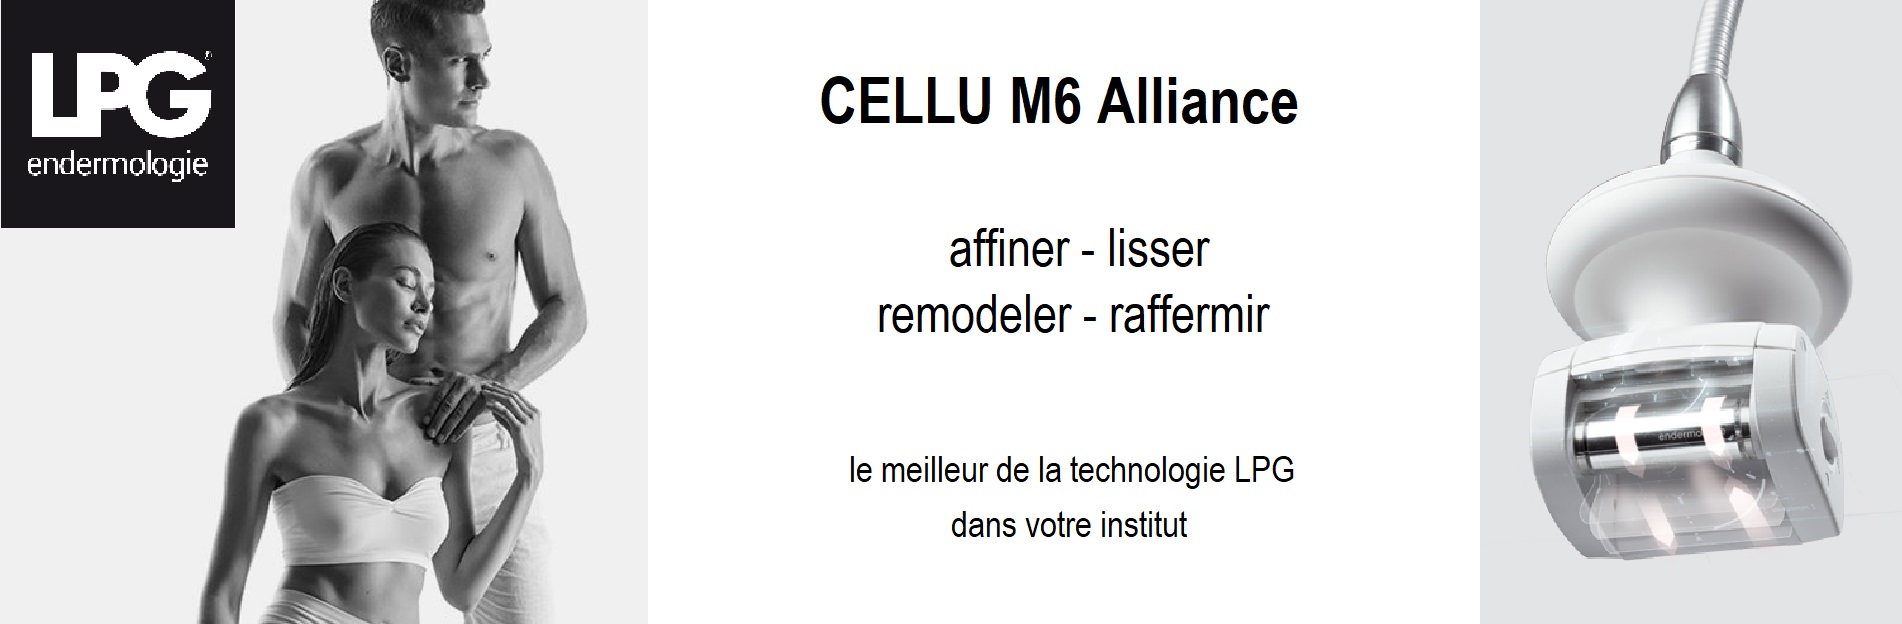 cellu m6 alliance LPG